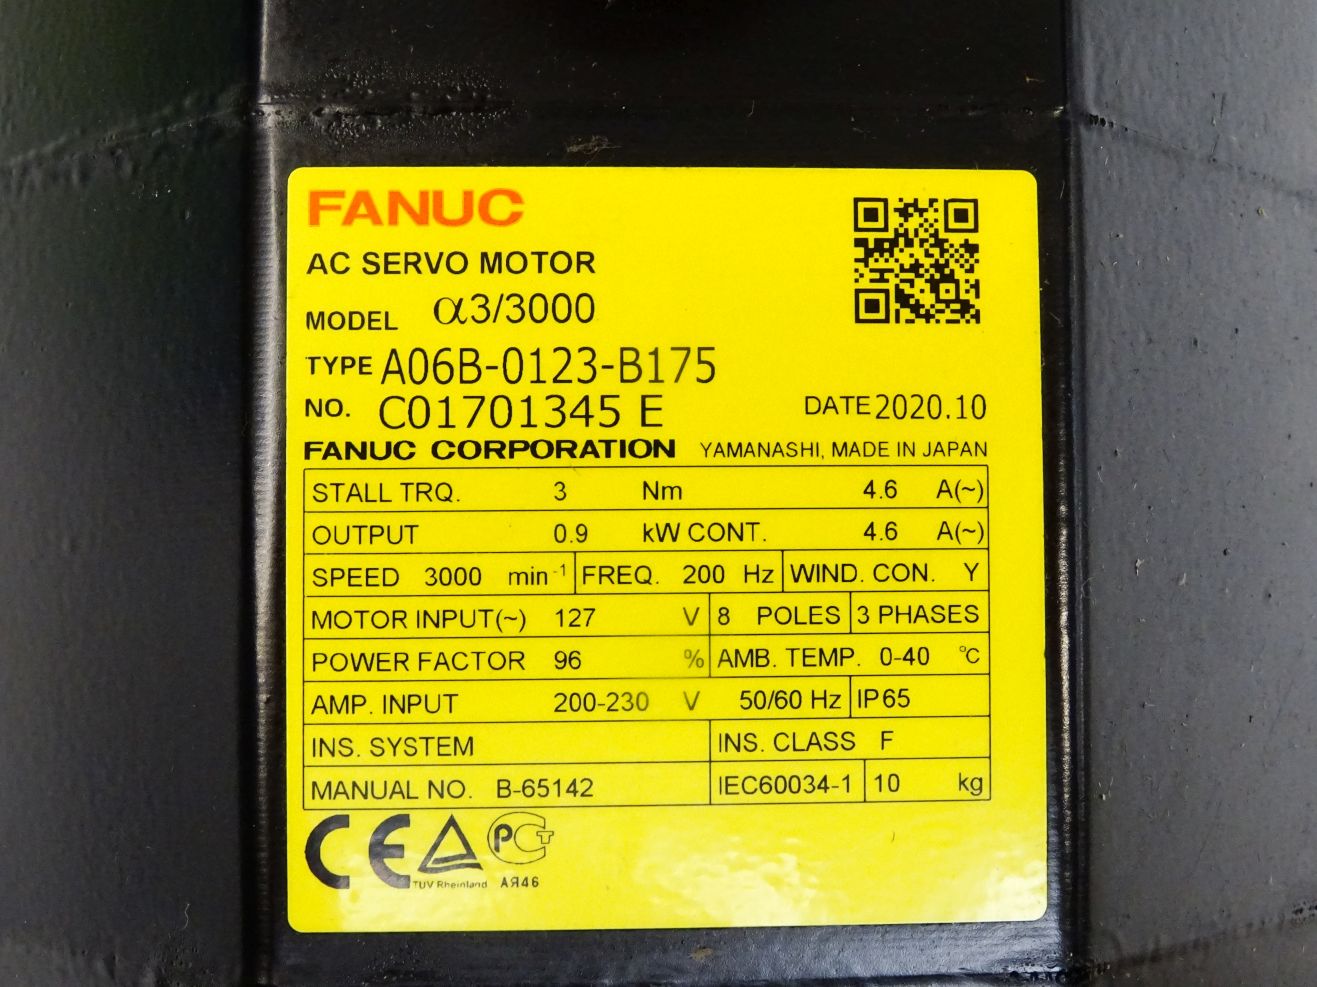 Fanuc A06B-0123-B076#7000 Model a3/3000 Servomotor - CNC BOTE